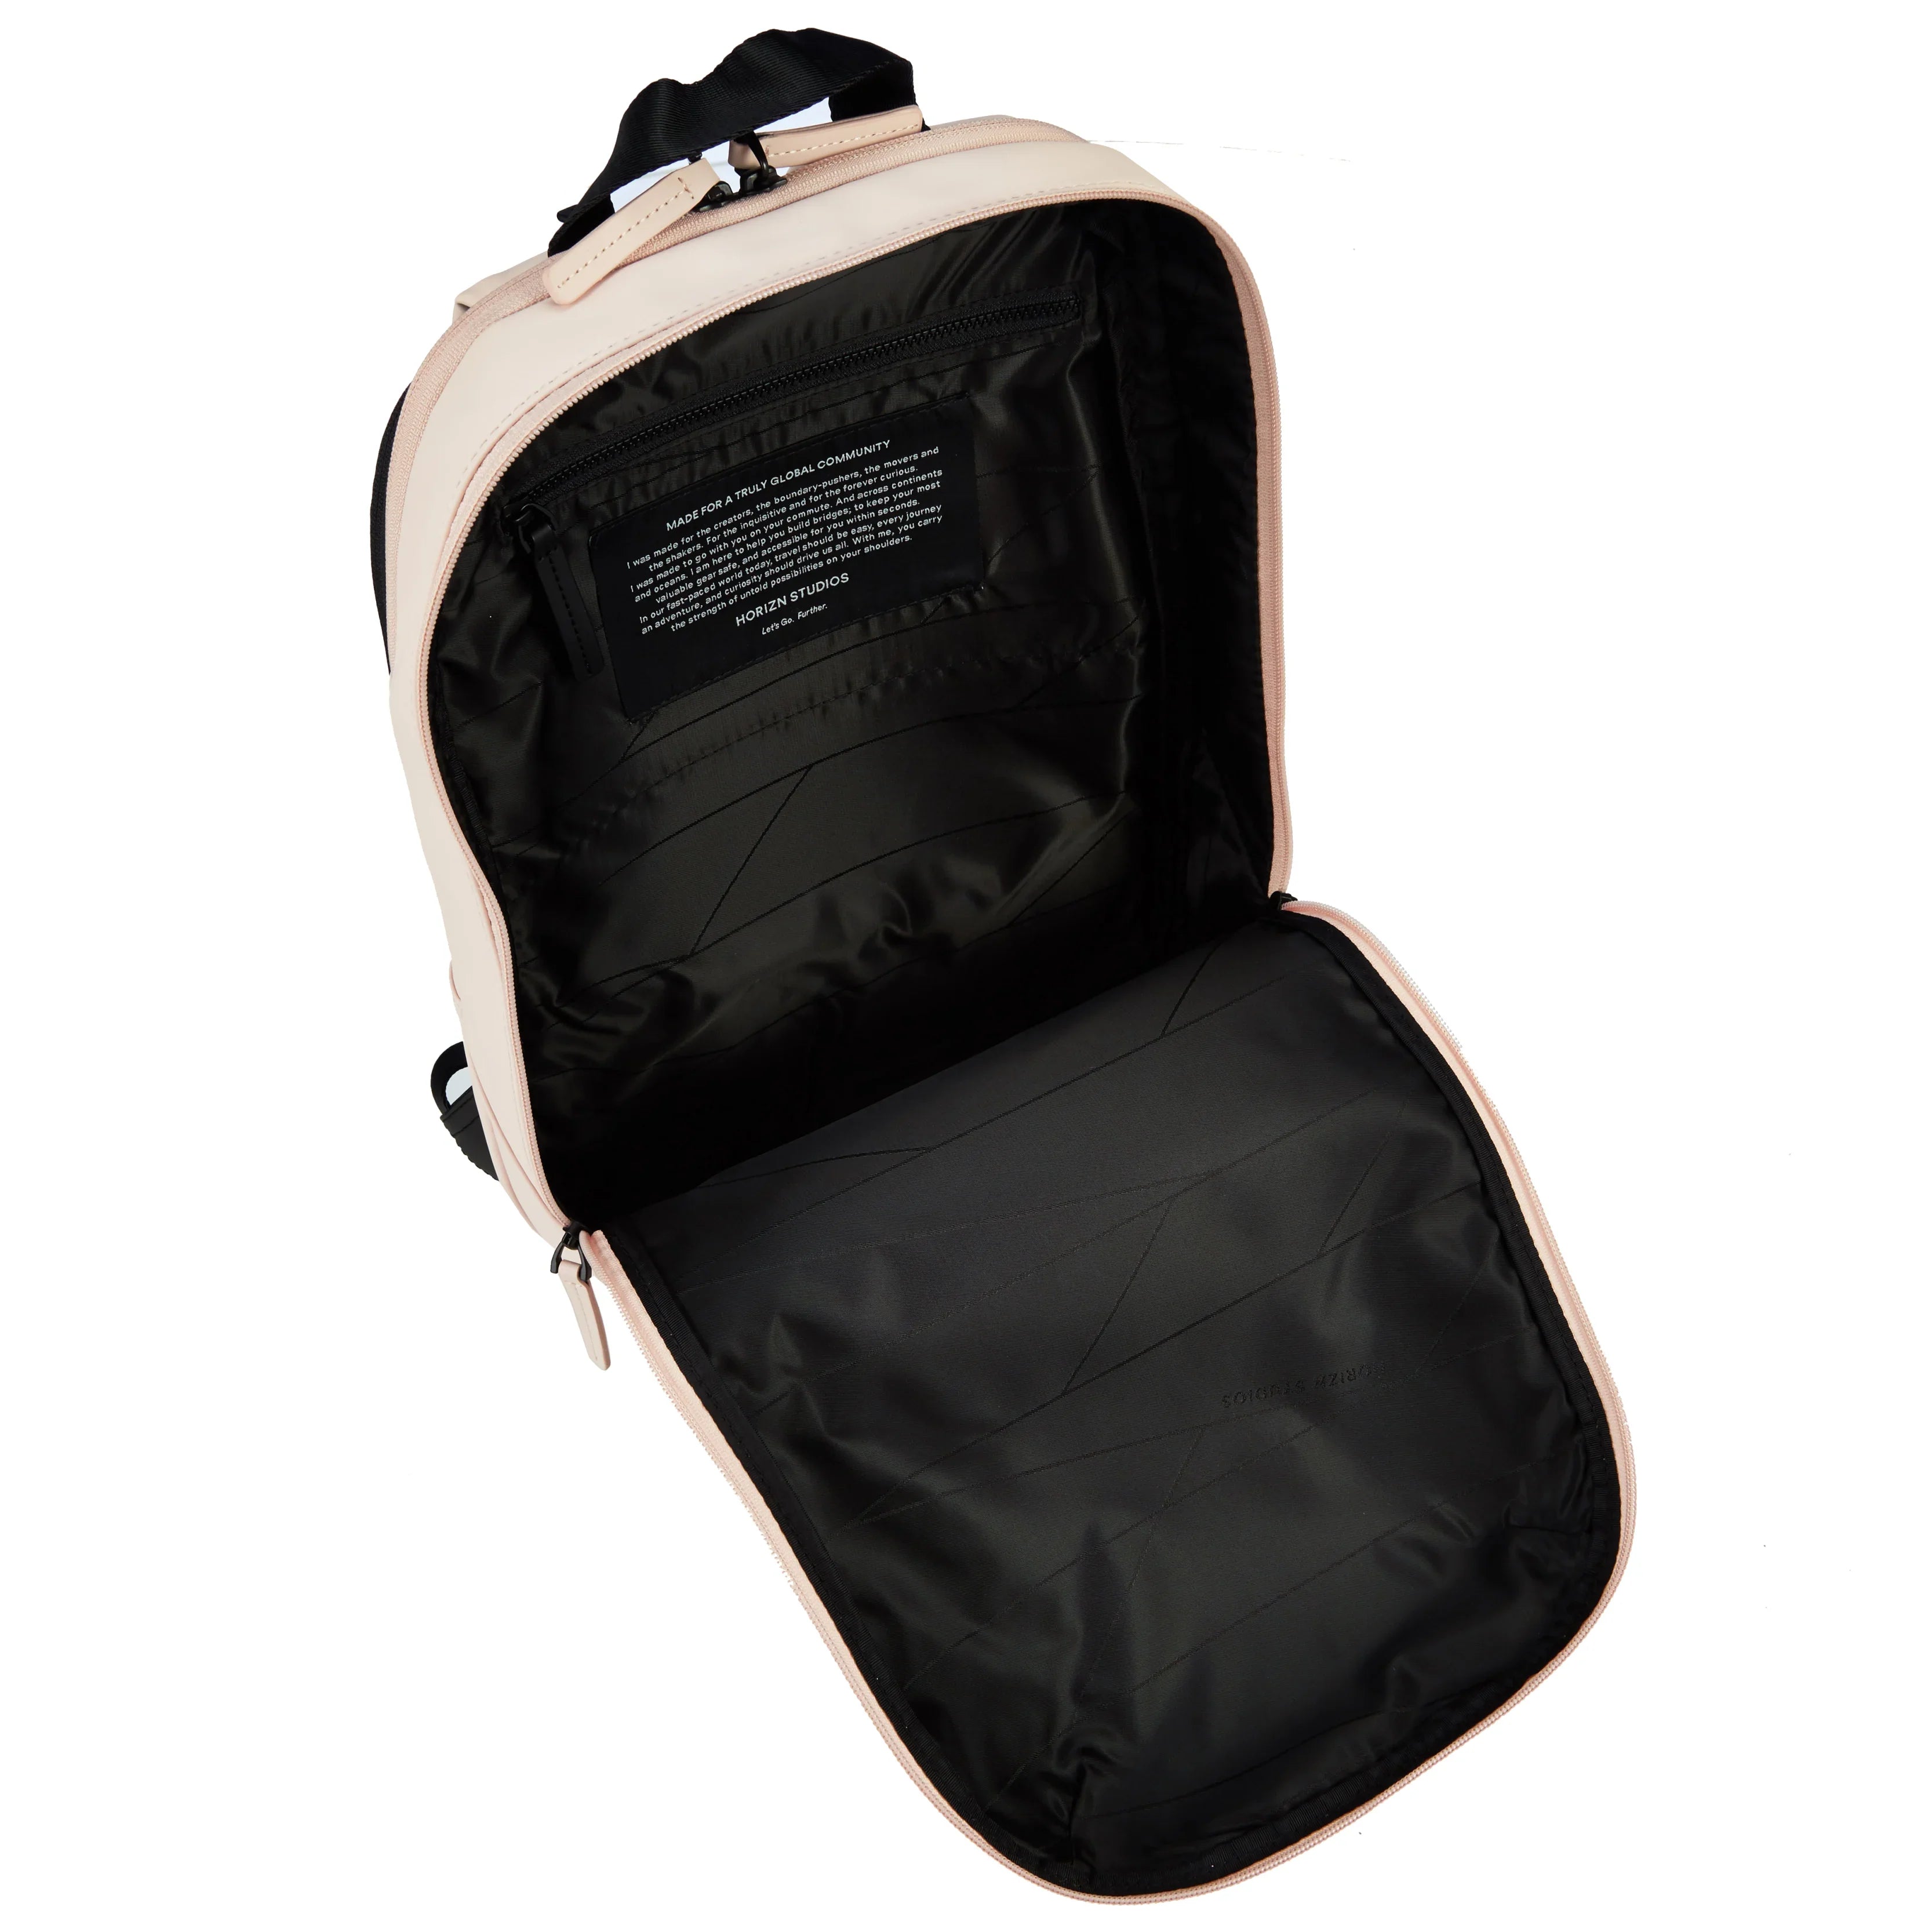 Horizn Studios Gion backpack S 43 cm - pale rose